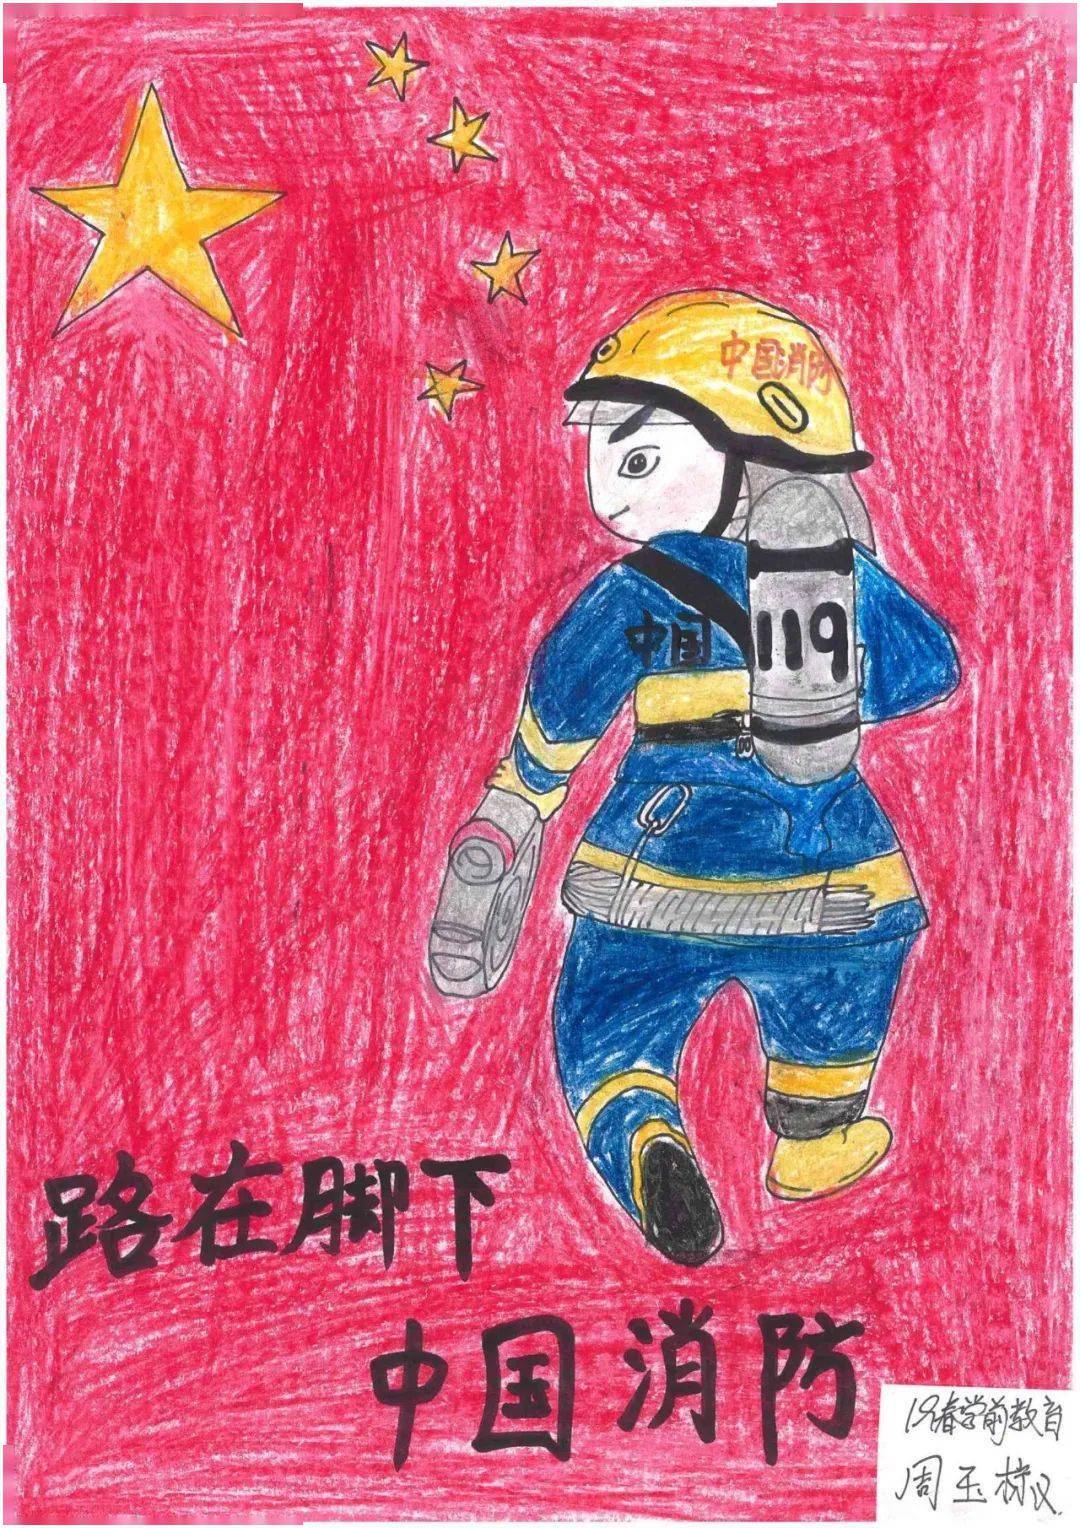 人气投票丨选出你最喜欢的消防绘画作品吧!